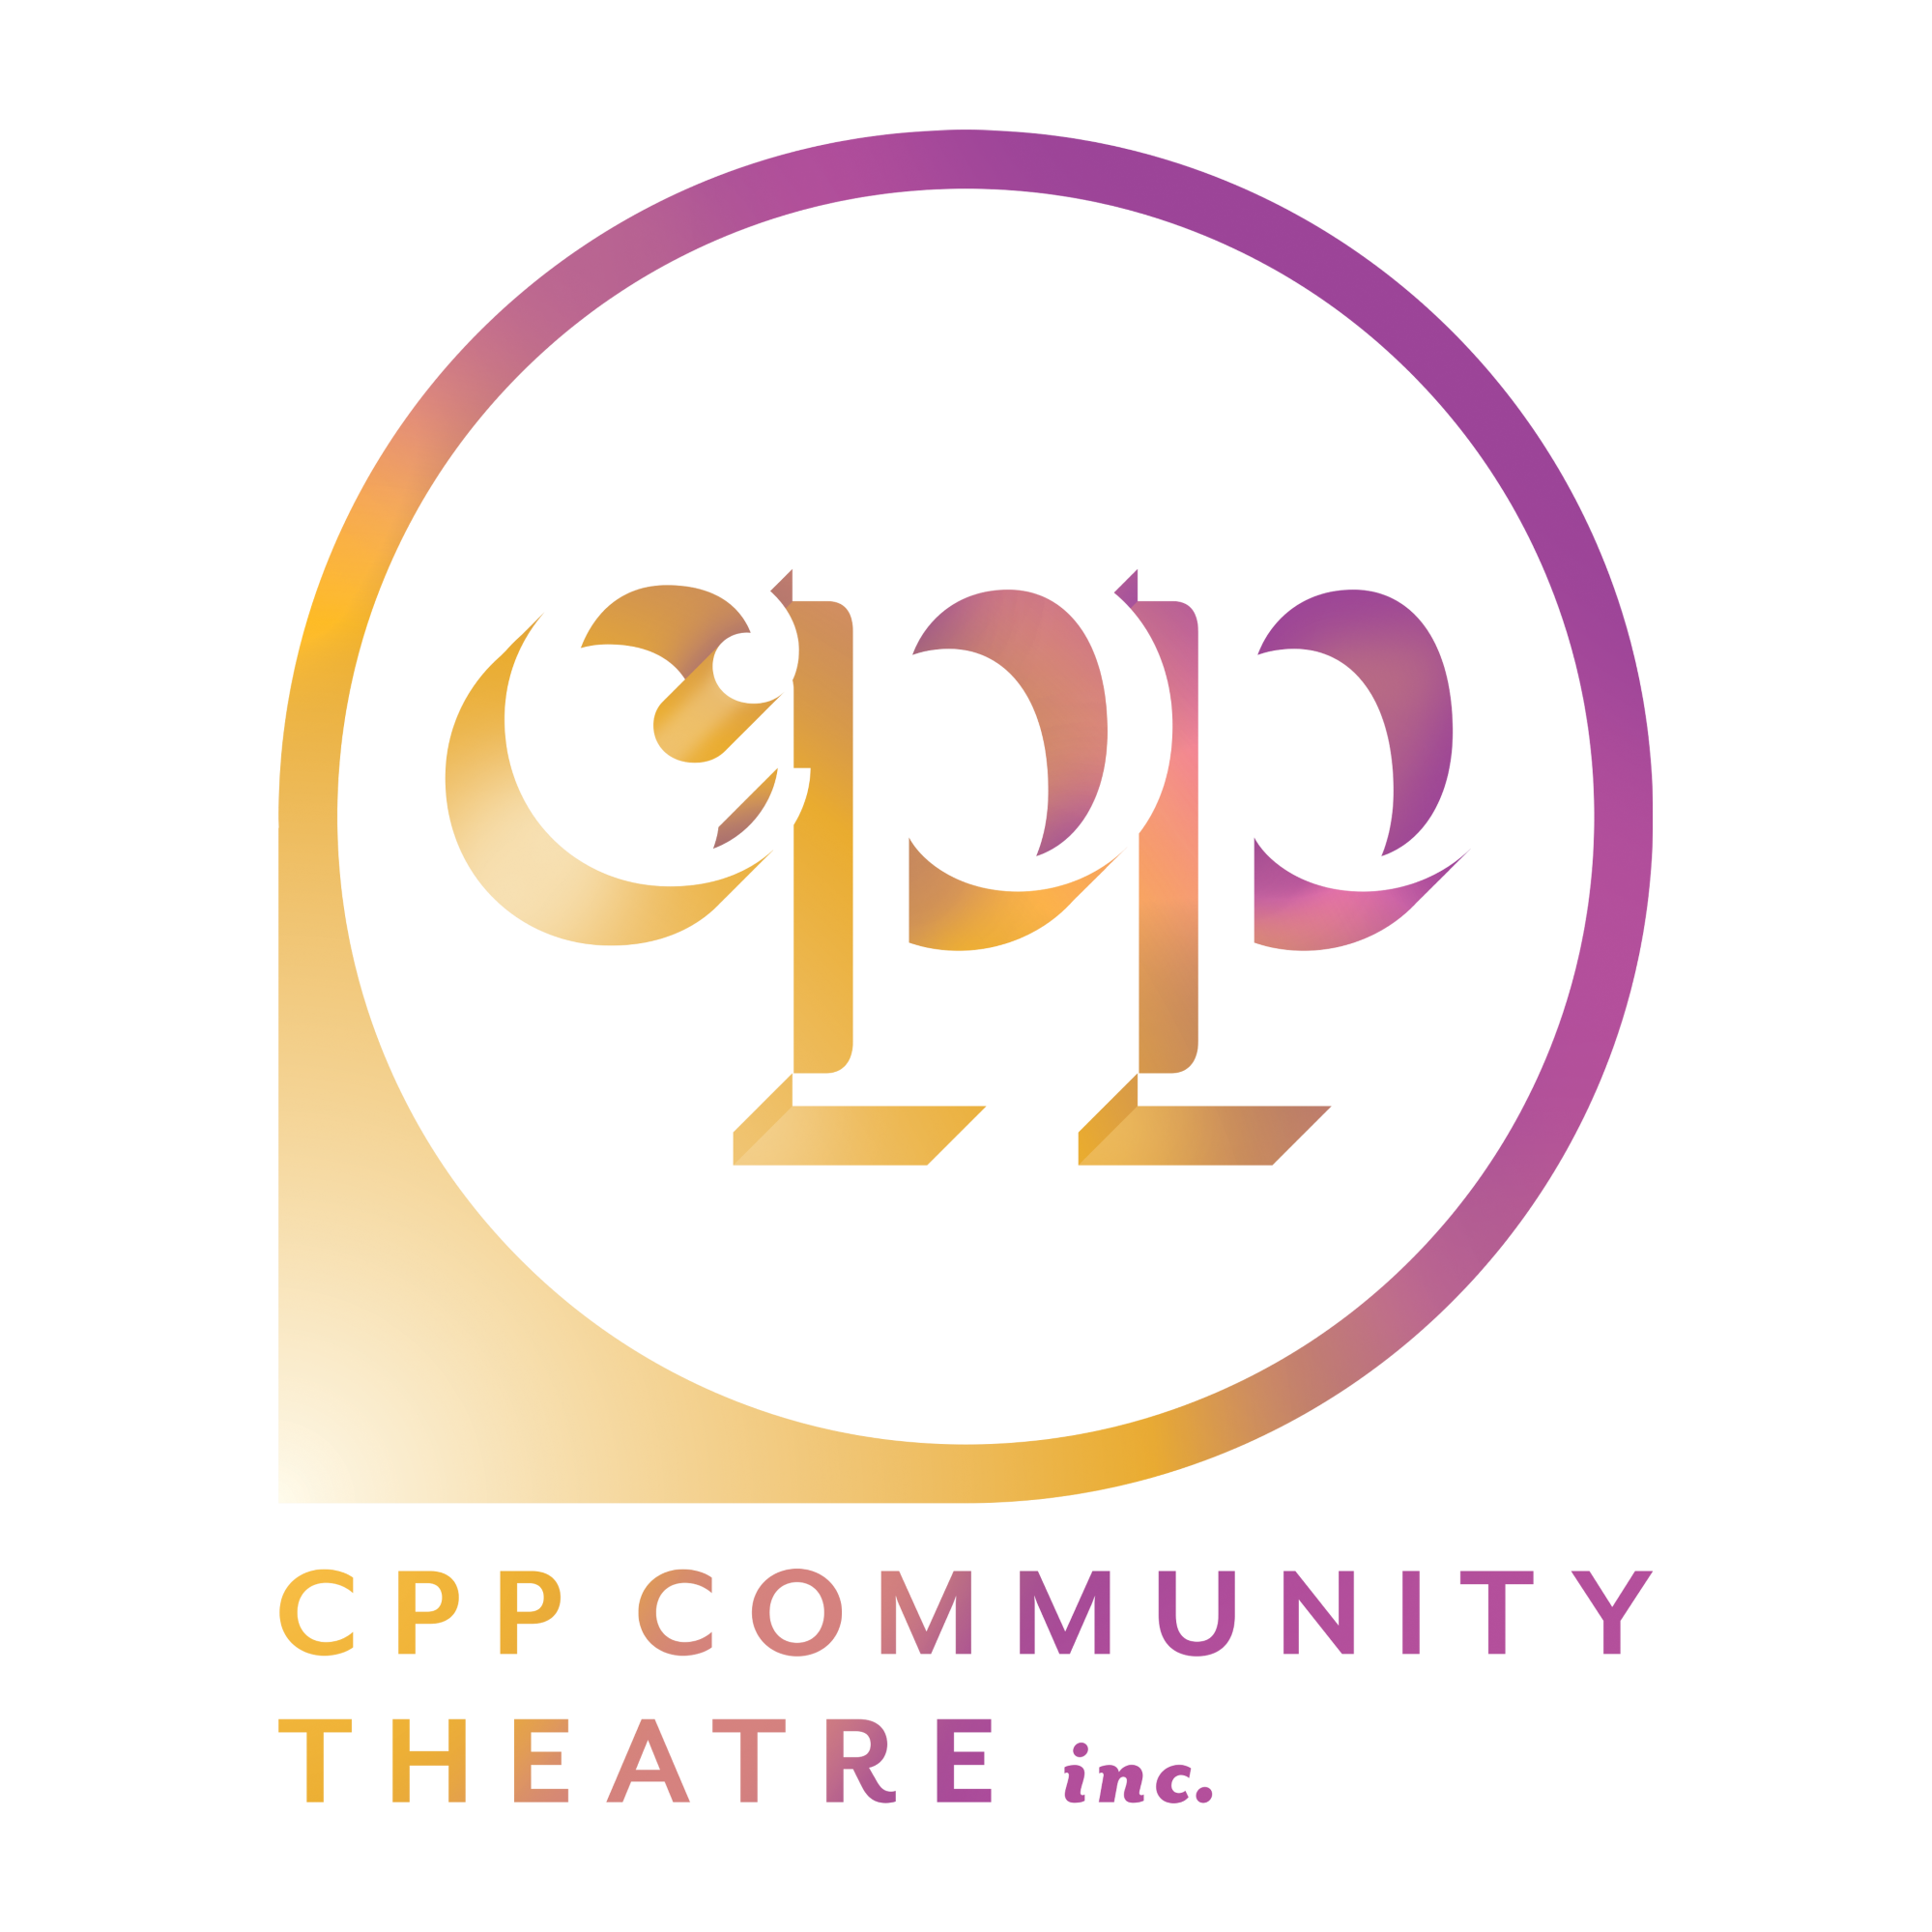 CPP Community Theatre Inc